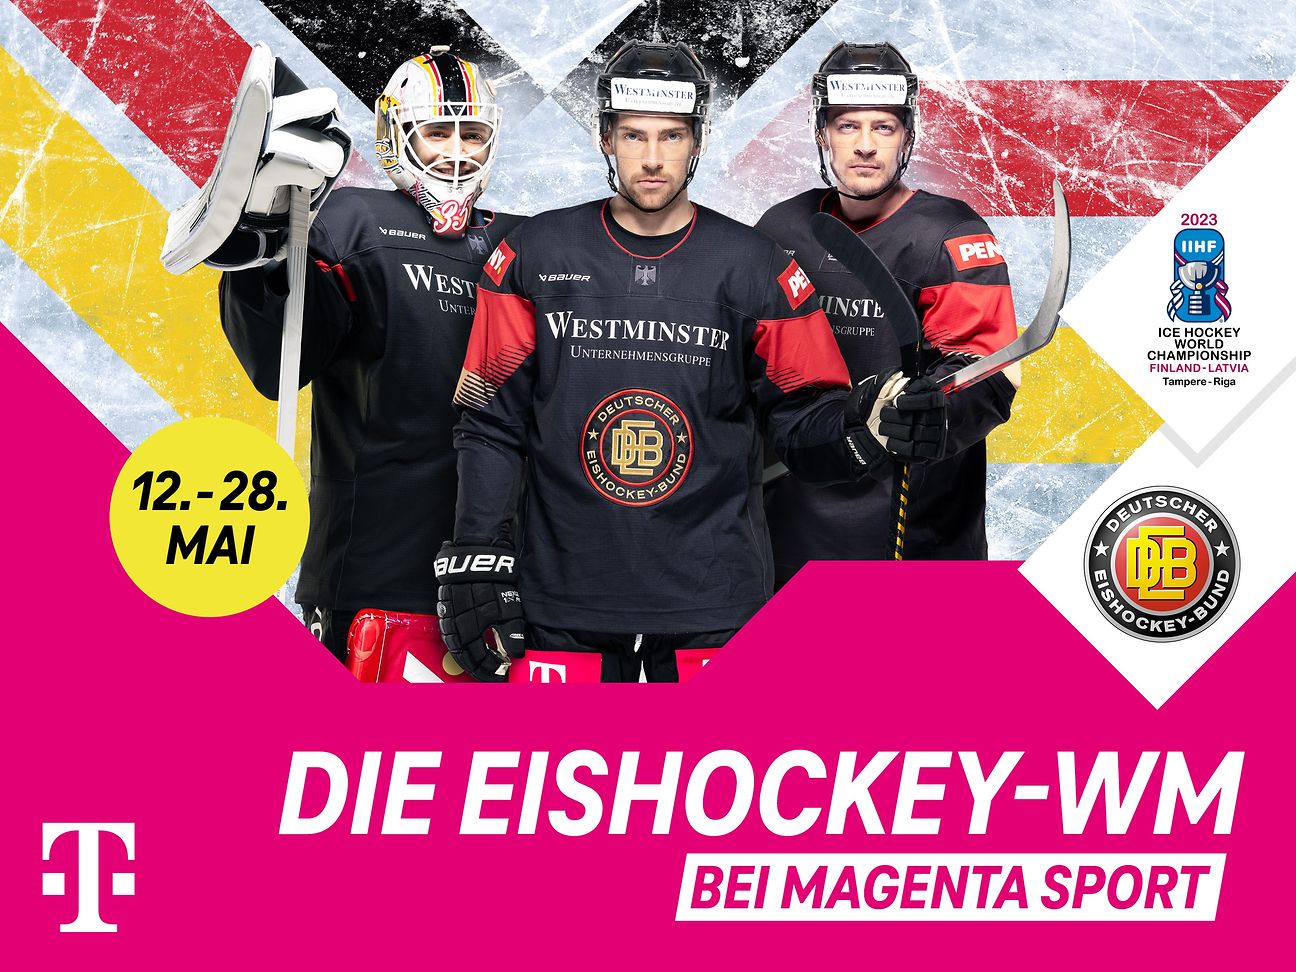 Eishockey-WM Copyright Deutsche Telekom